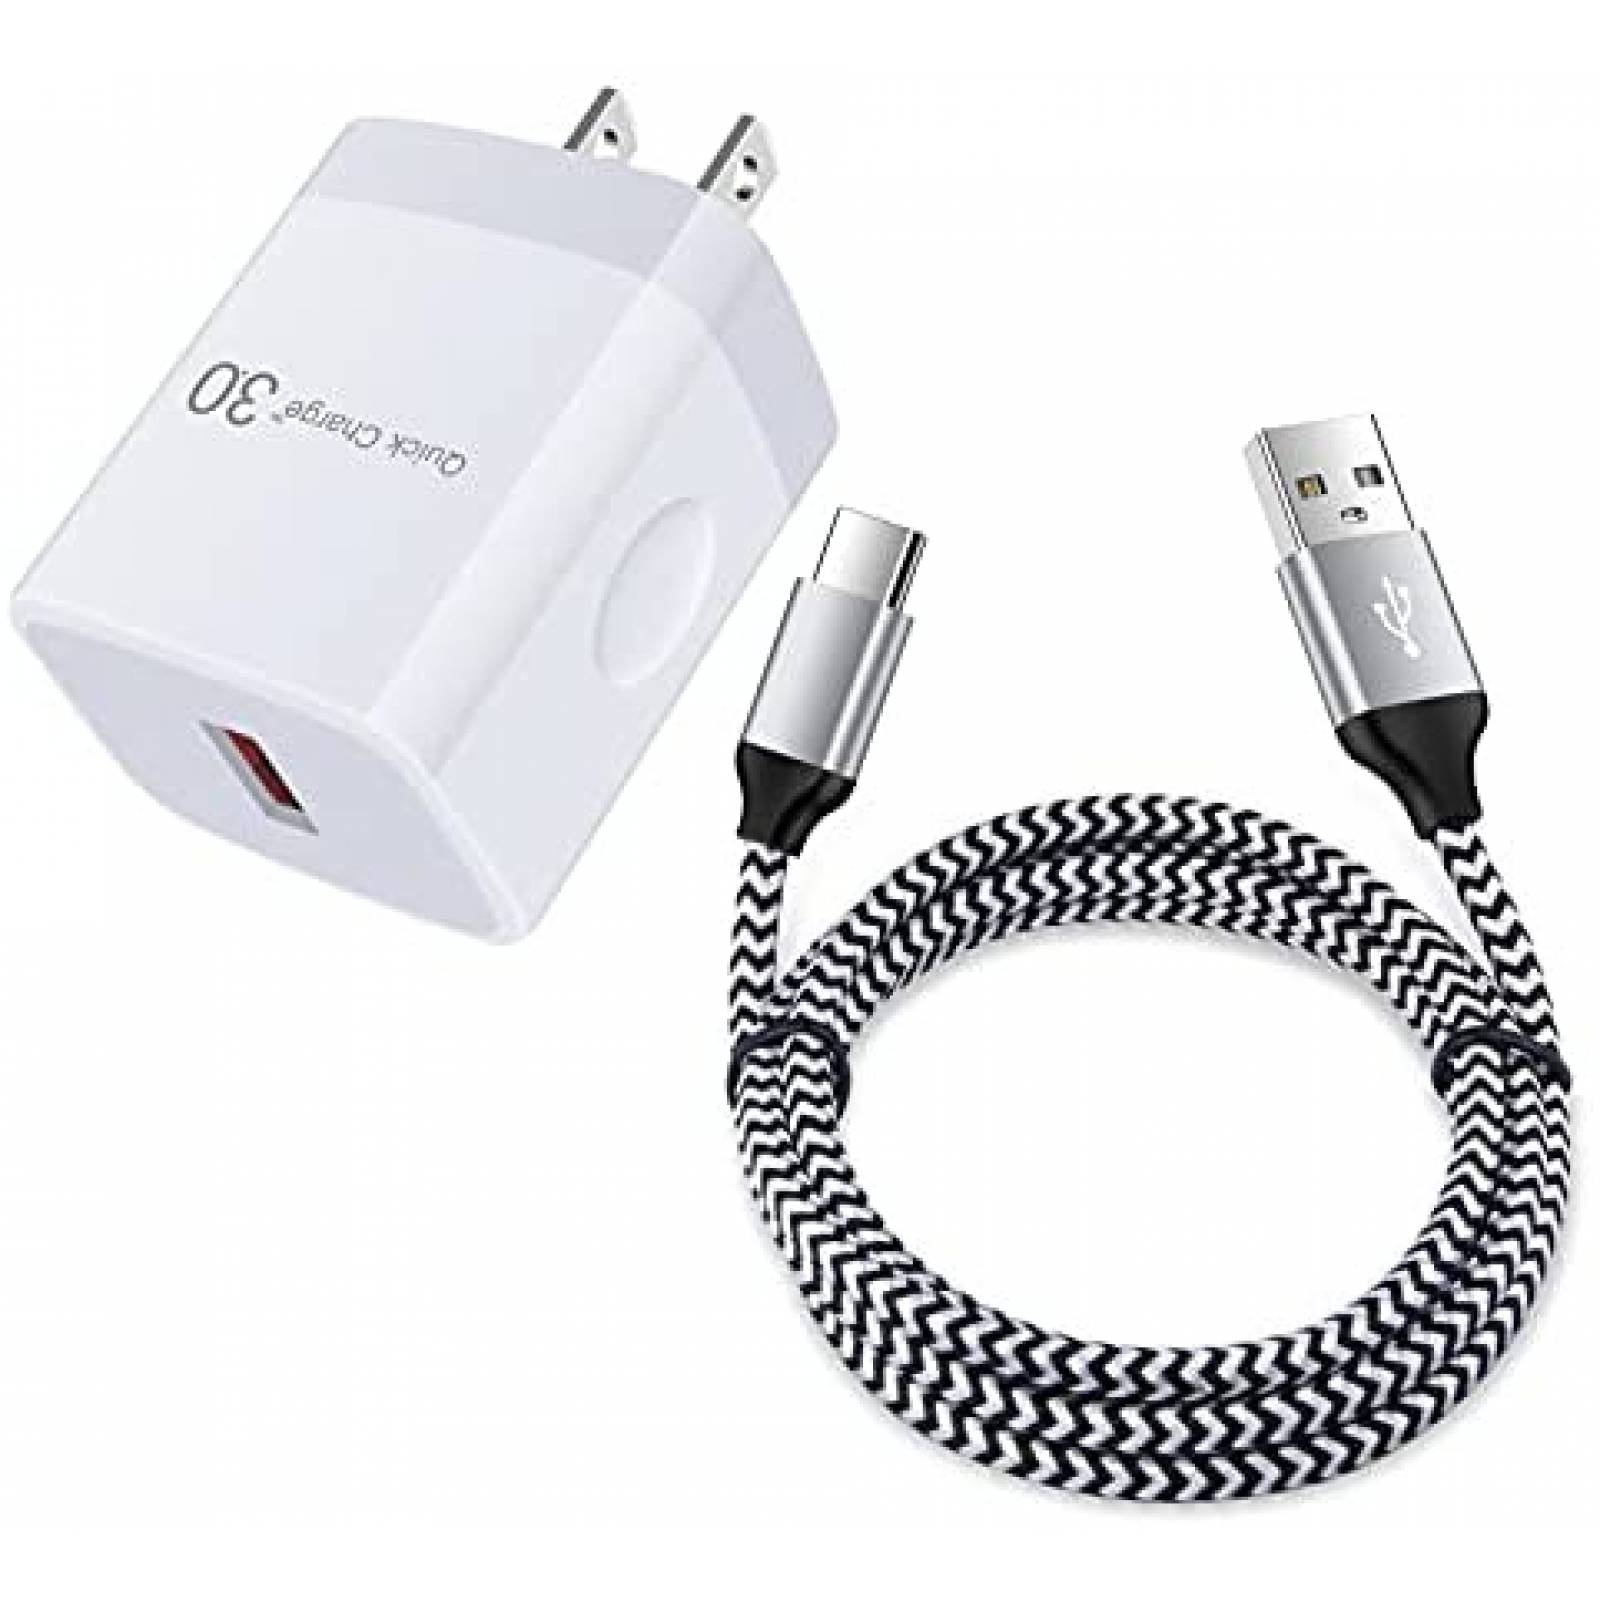 Cable De Cargador Usb Para iPhone iPad 12w Carga Rápida 3pzs Blanco